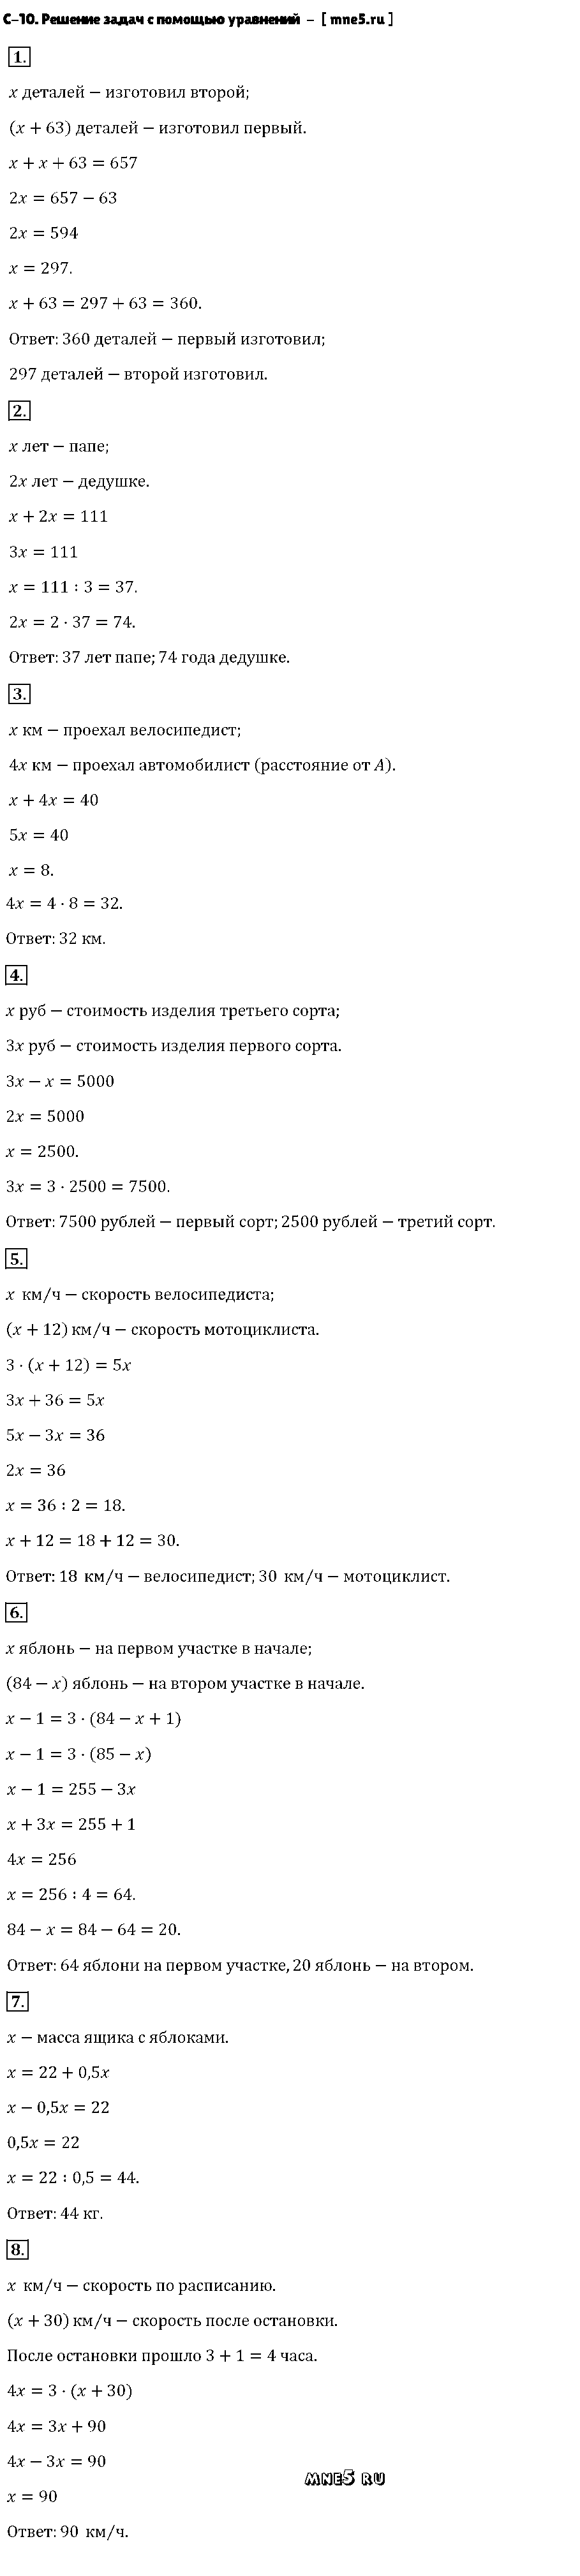 ГДЗ Алгебра 7 класс - С-10. Решение задач с помощью уравнений